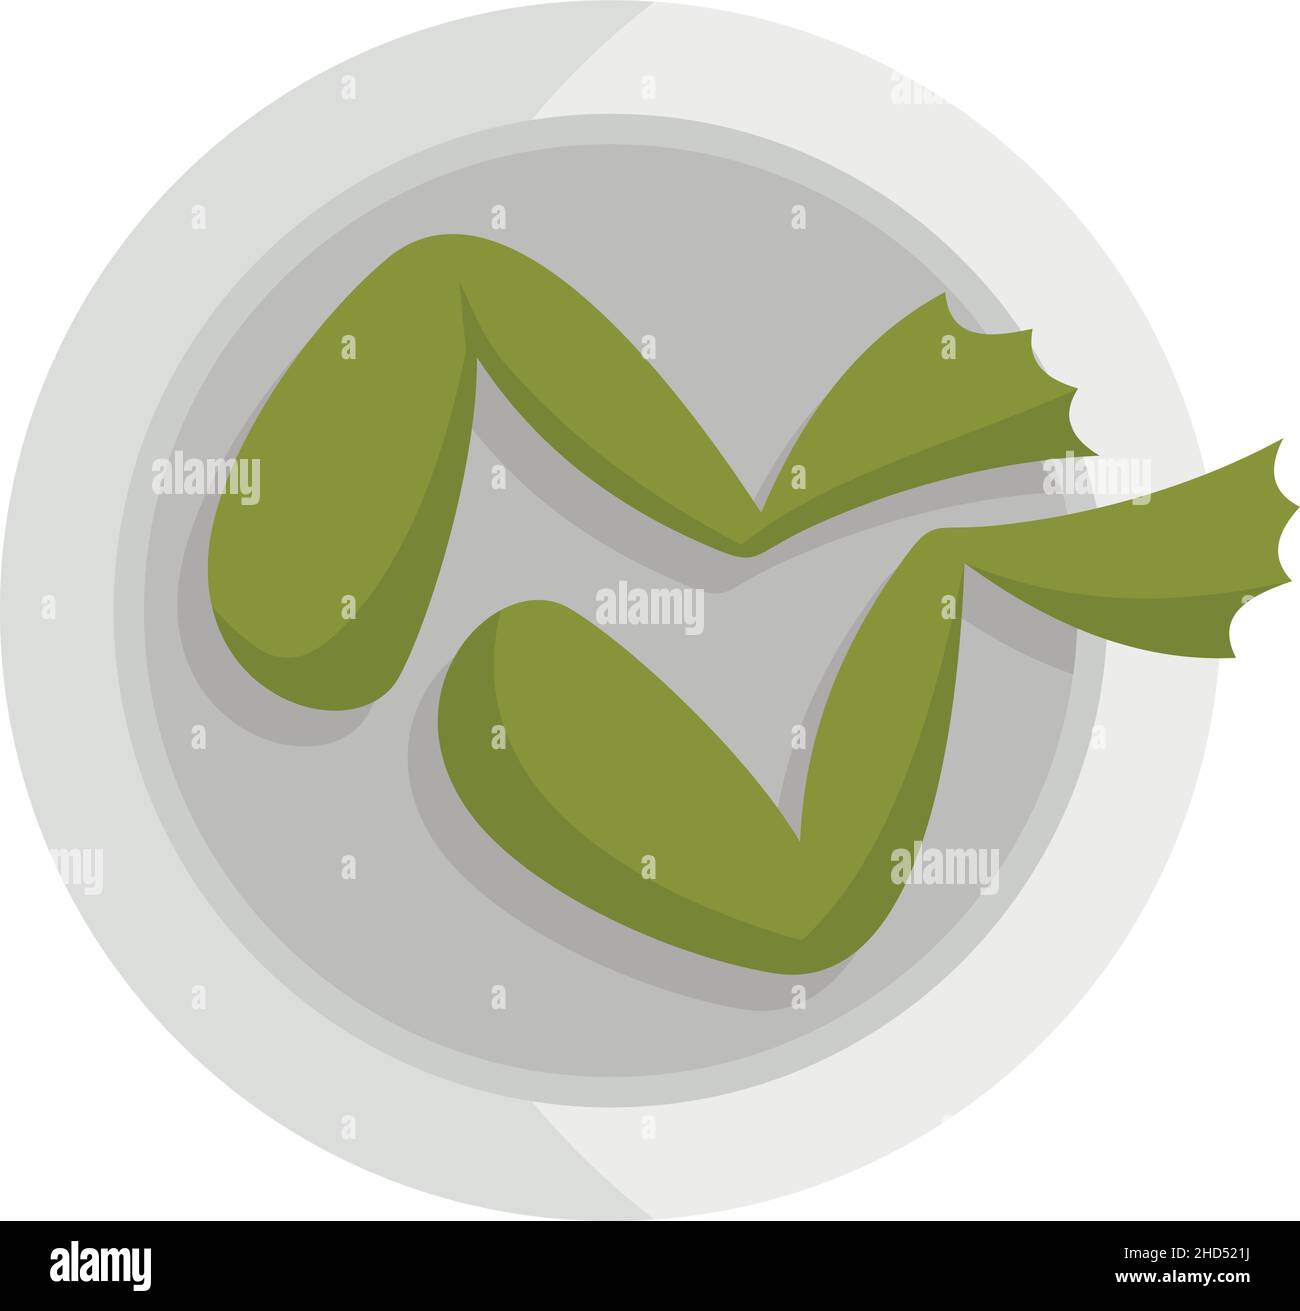 Icône FROG FROG.Illustration plate de l'icône vectorielle des pattes de grenouille française isolée sur fond blanc Illustration de Vecteur